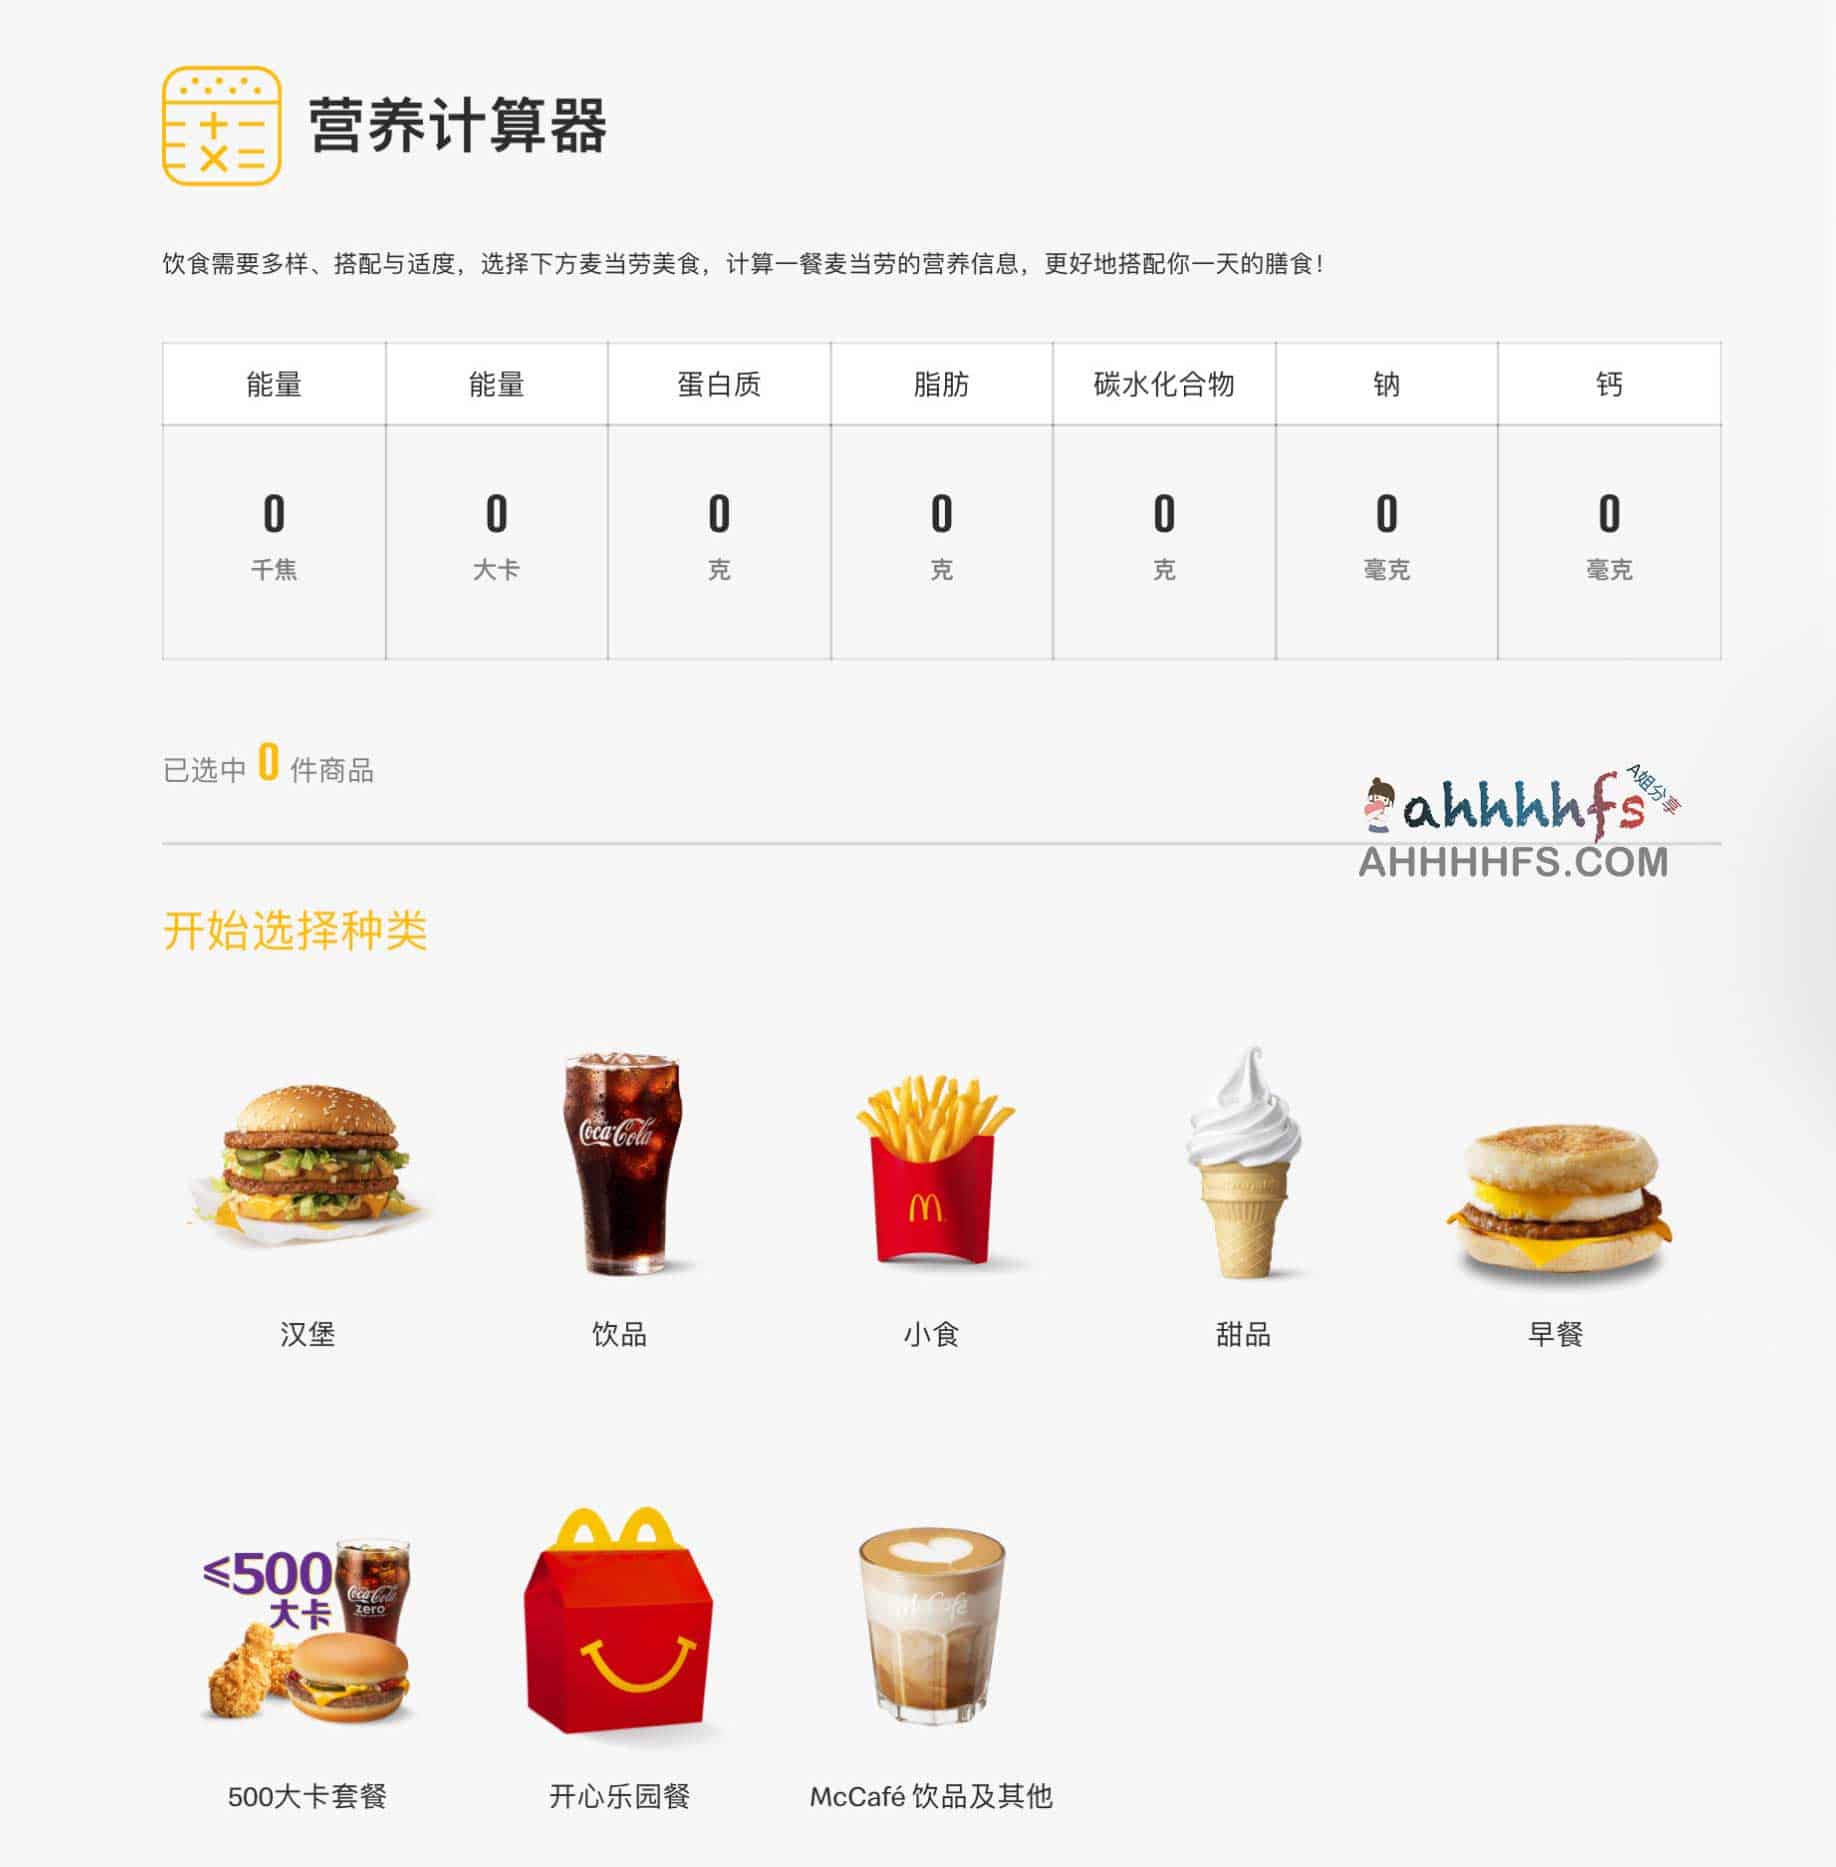 麦当劳营养计算器 能计算产品卡路里